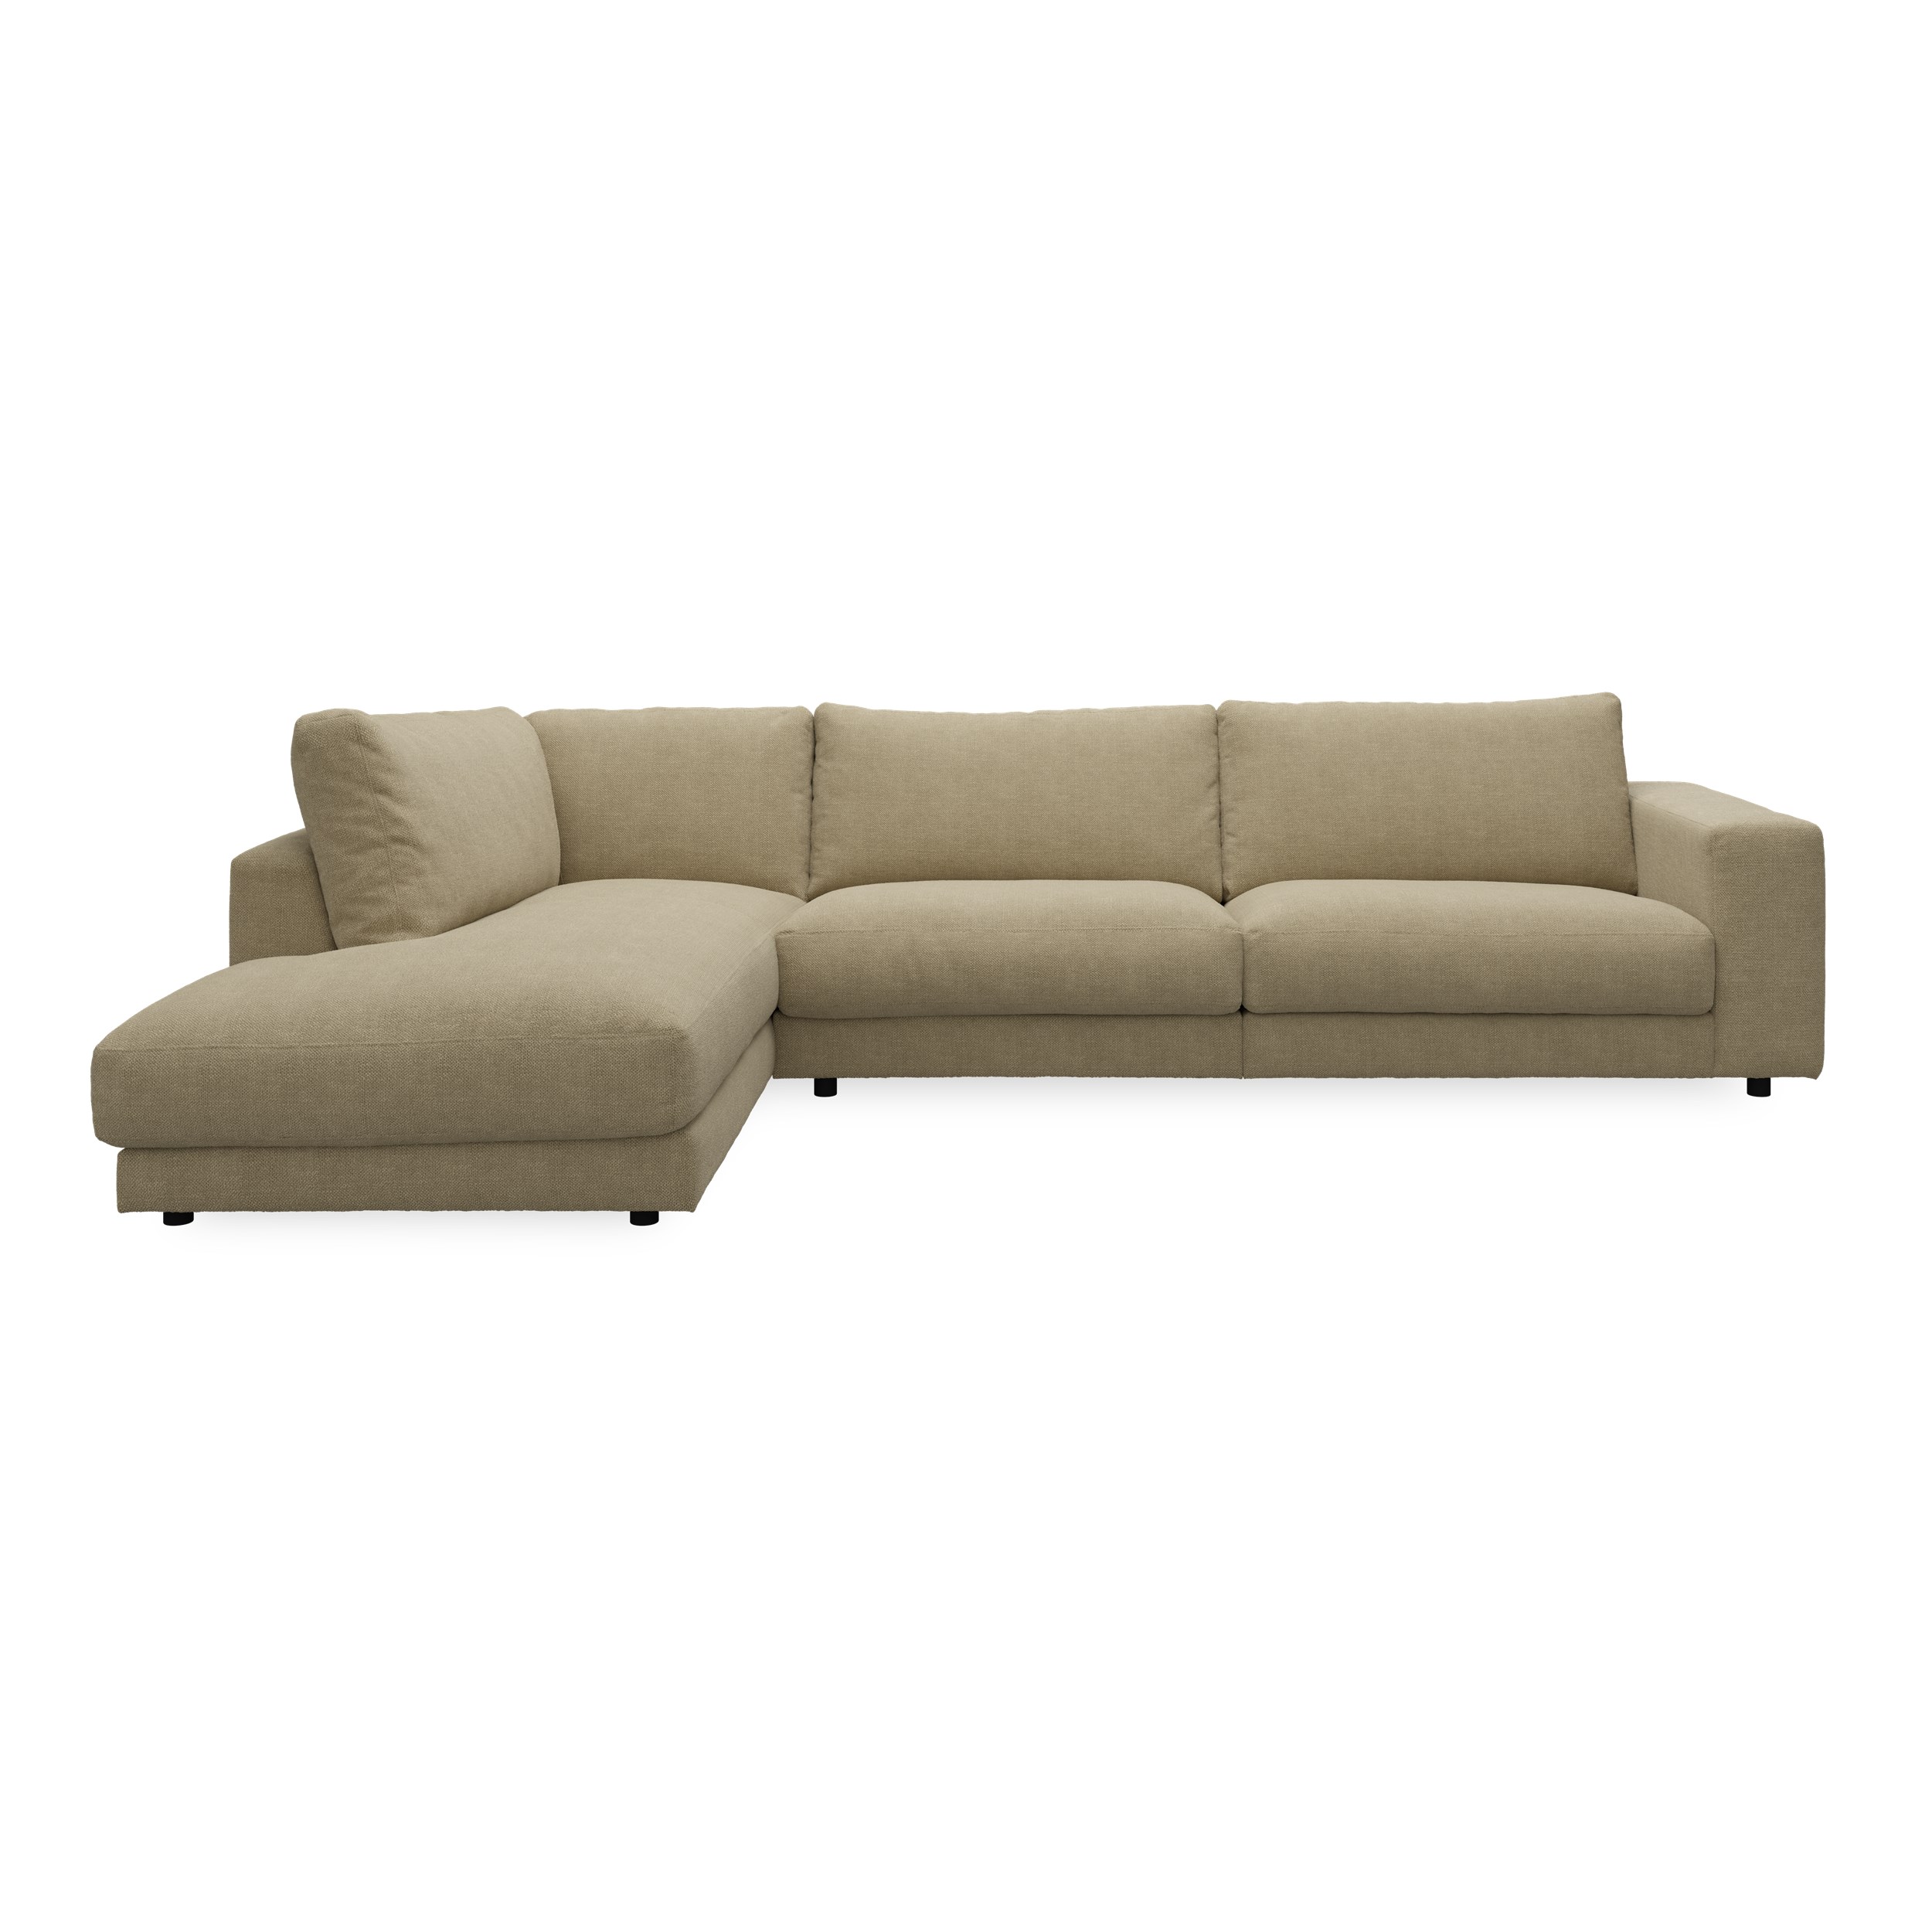 Bennent vänstervänd soffa med divan - Picasso Sand klädsel, ben i svart plast och S:skum/fib/din/sili R:Dun/skum